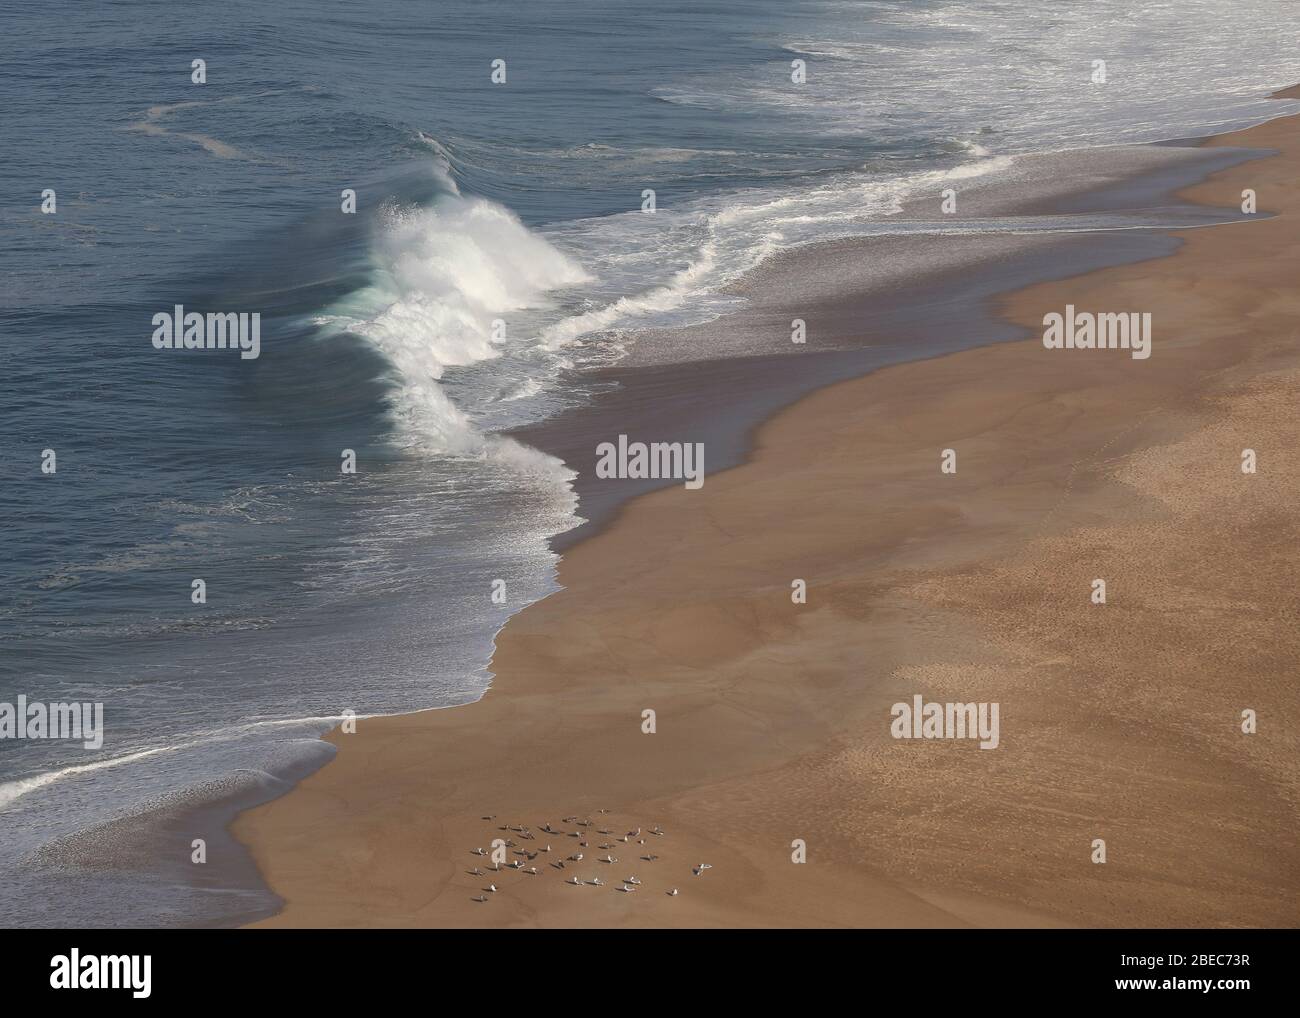 Vue sur Praia do Norte comme de grandes vagues s'écrasent sur la plage. Nazare est l'une des stations balnéaires les plus populaires de la Côte d'argent au Portugal. Banque D'Images